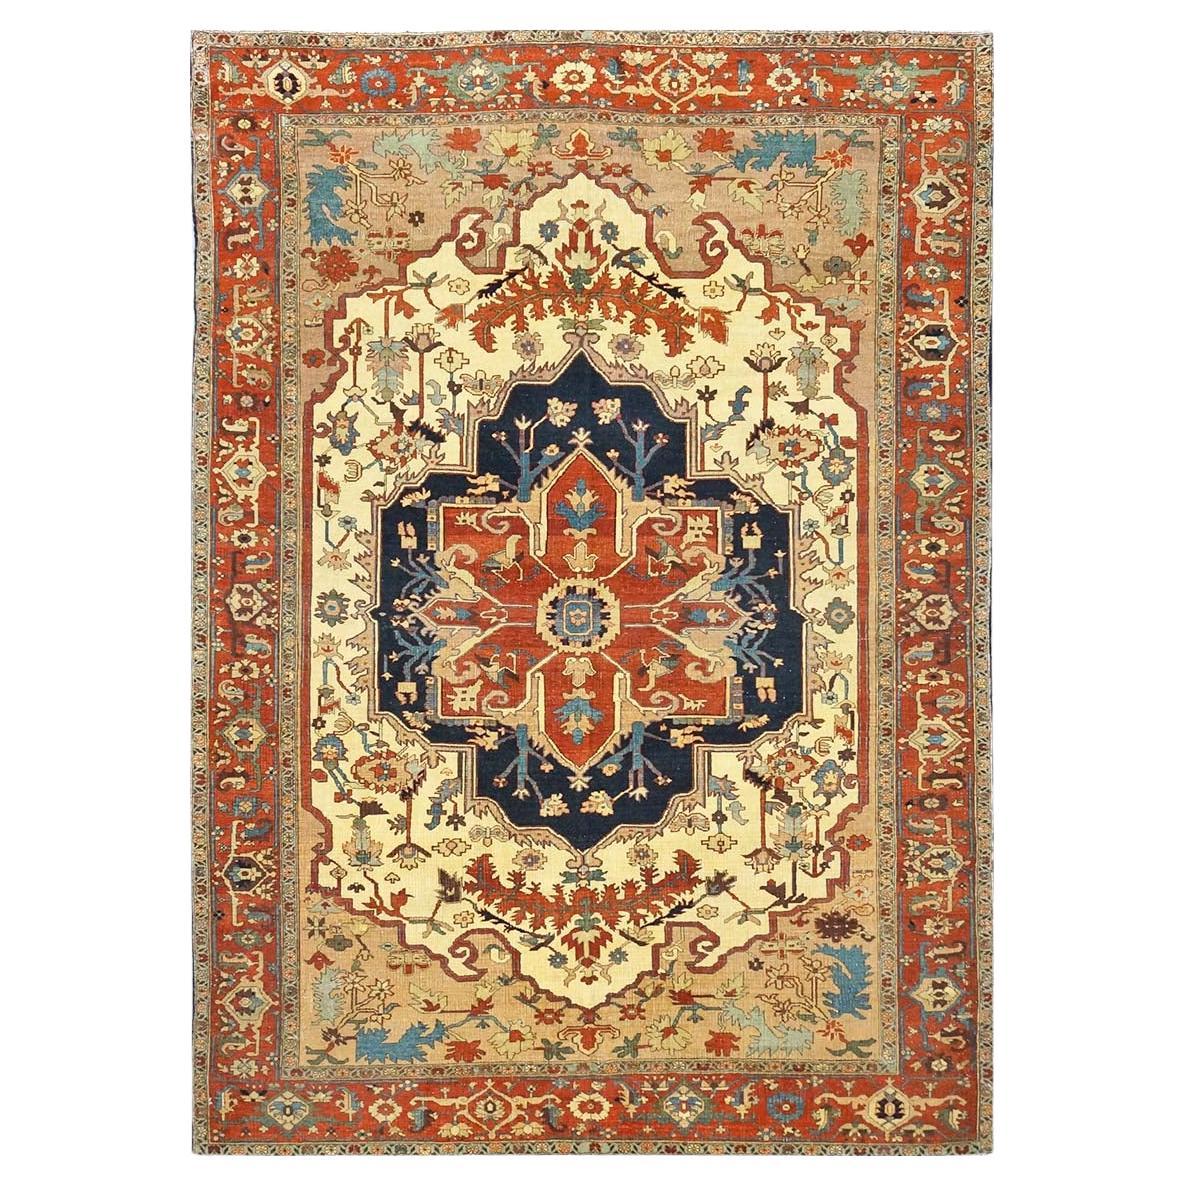 Persischer Serapi 7x11 handgefertigter Teppich in Rost, Elfenbein, Marineblau, & Hellbraun mit Reprodcution